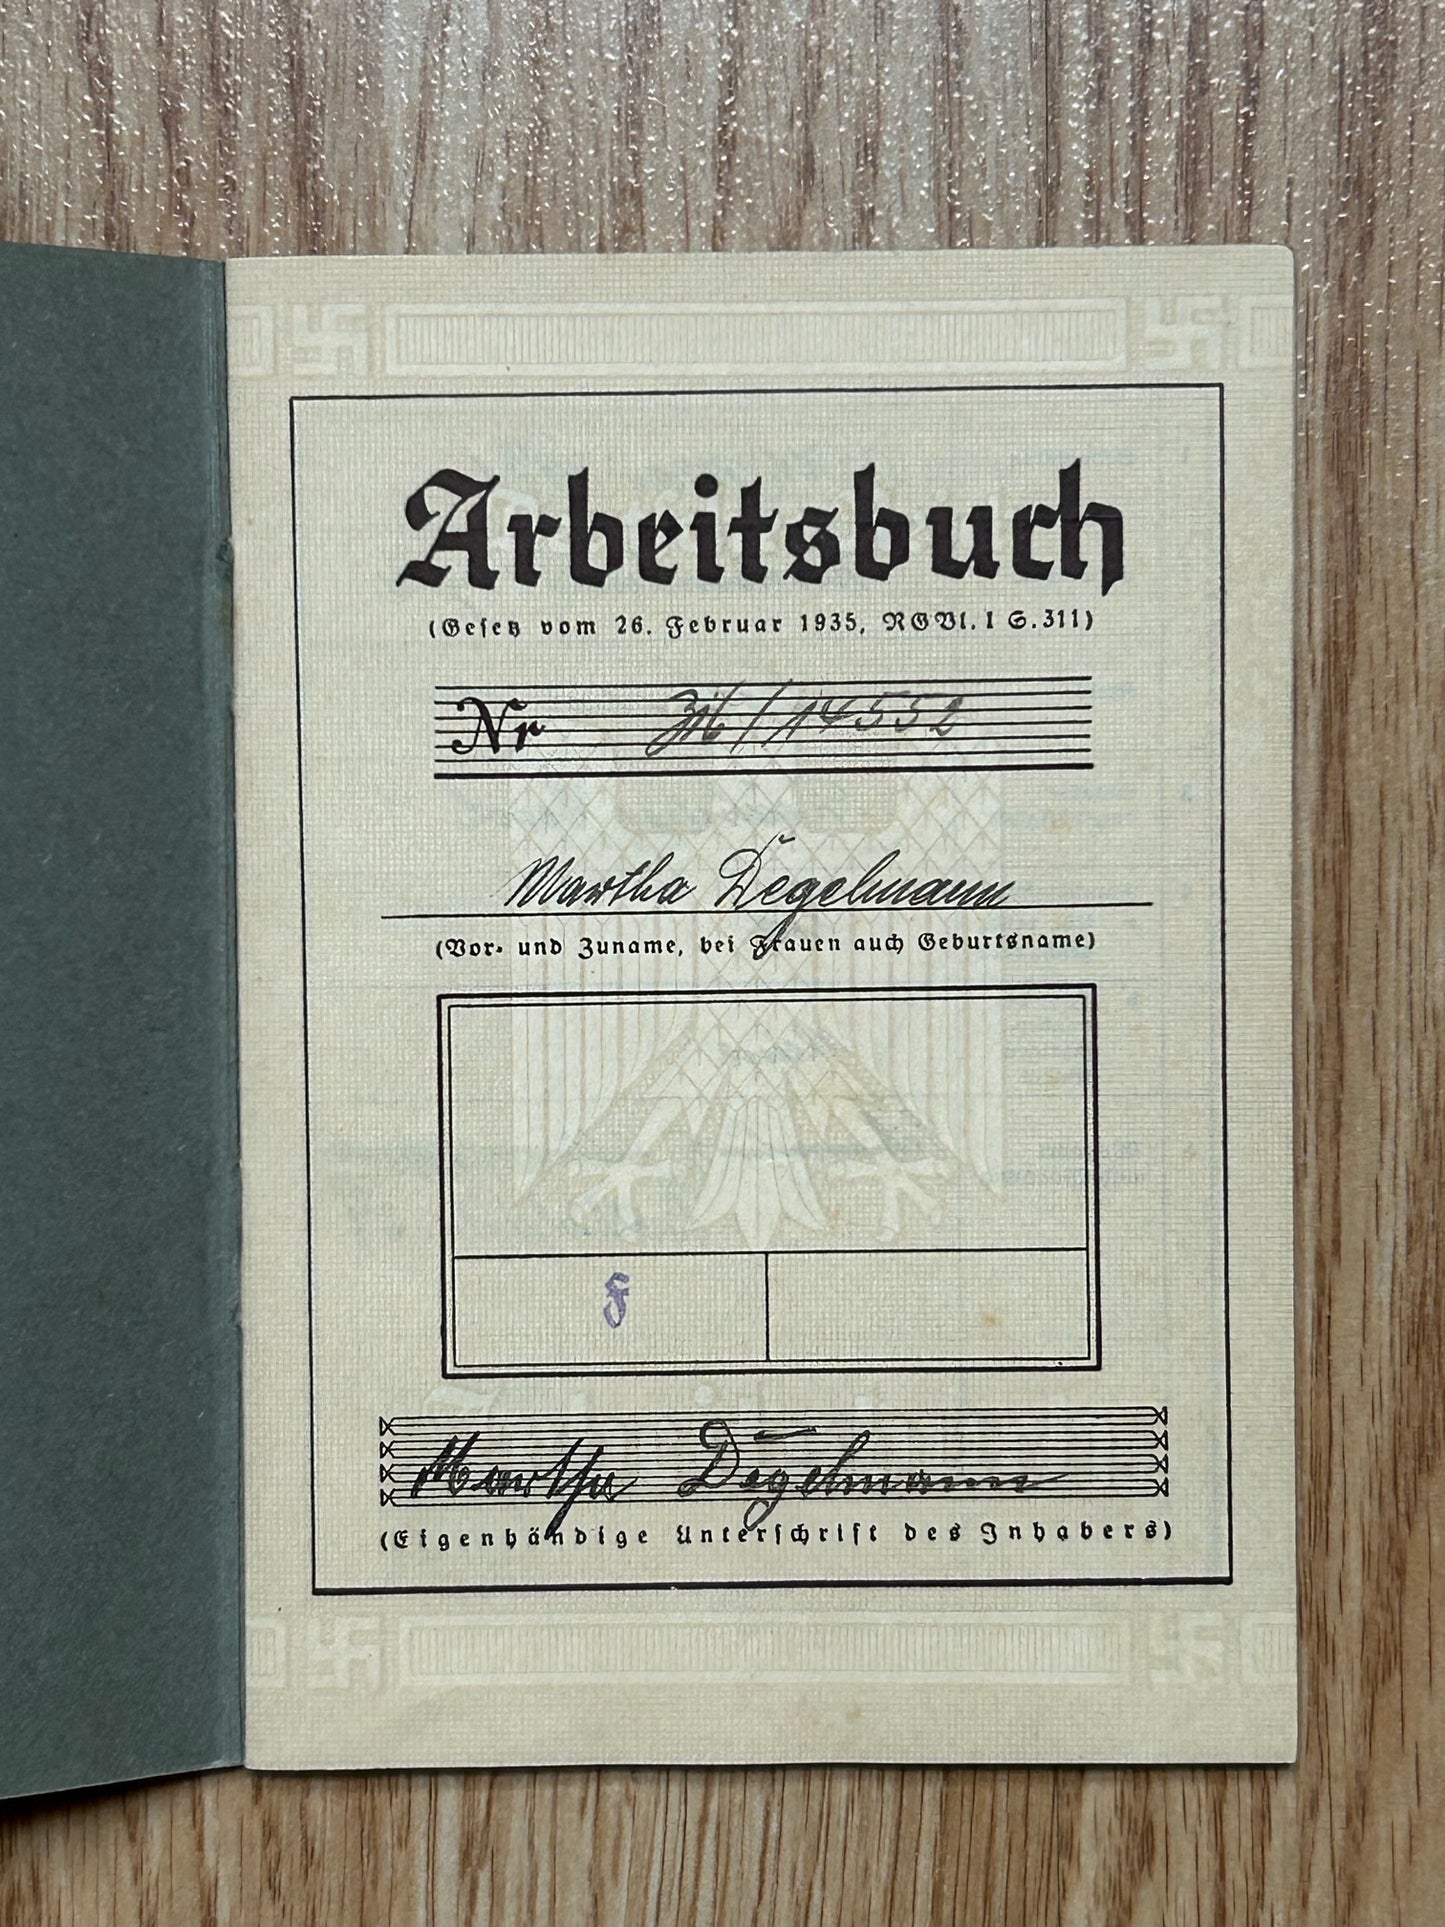 Arbeitsbuch - Schweinfurt factory worker